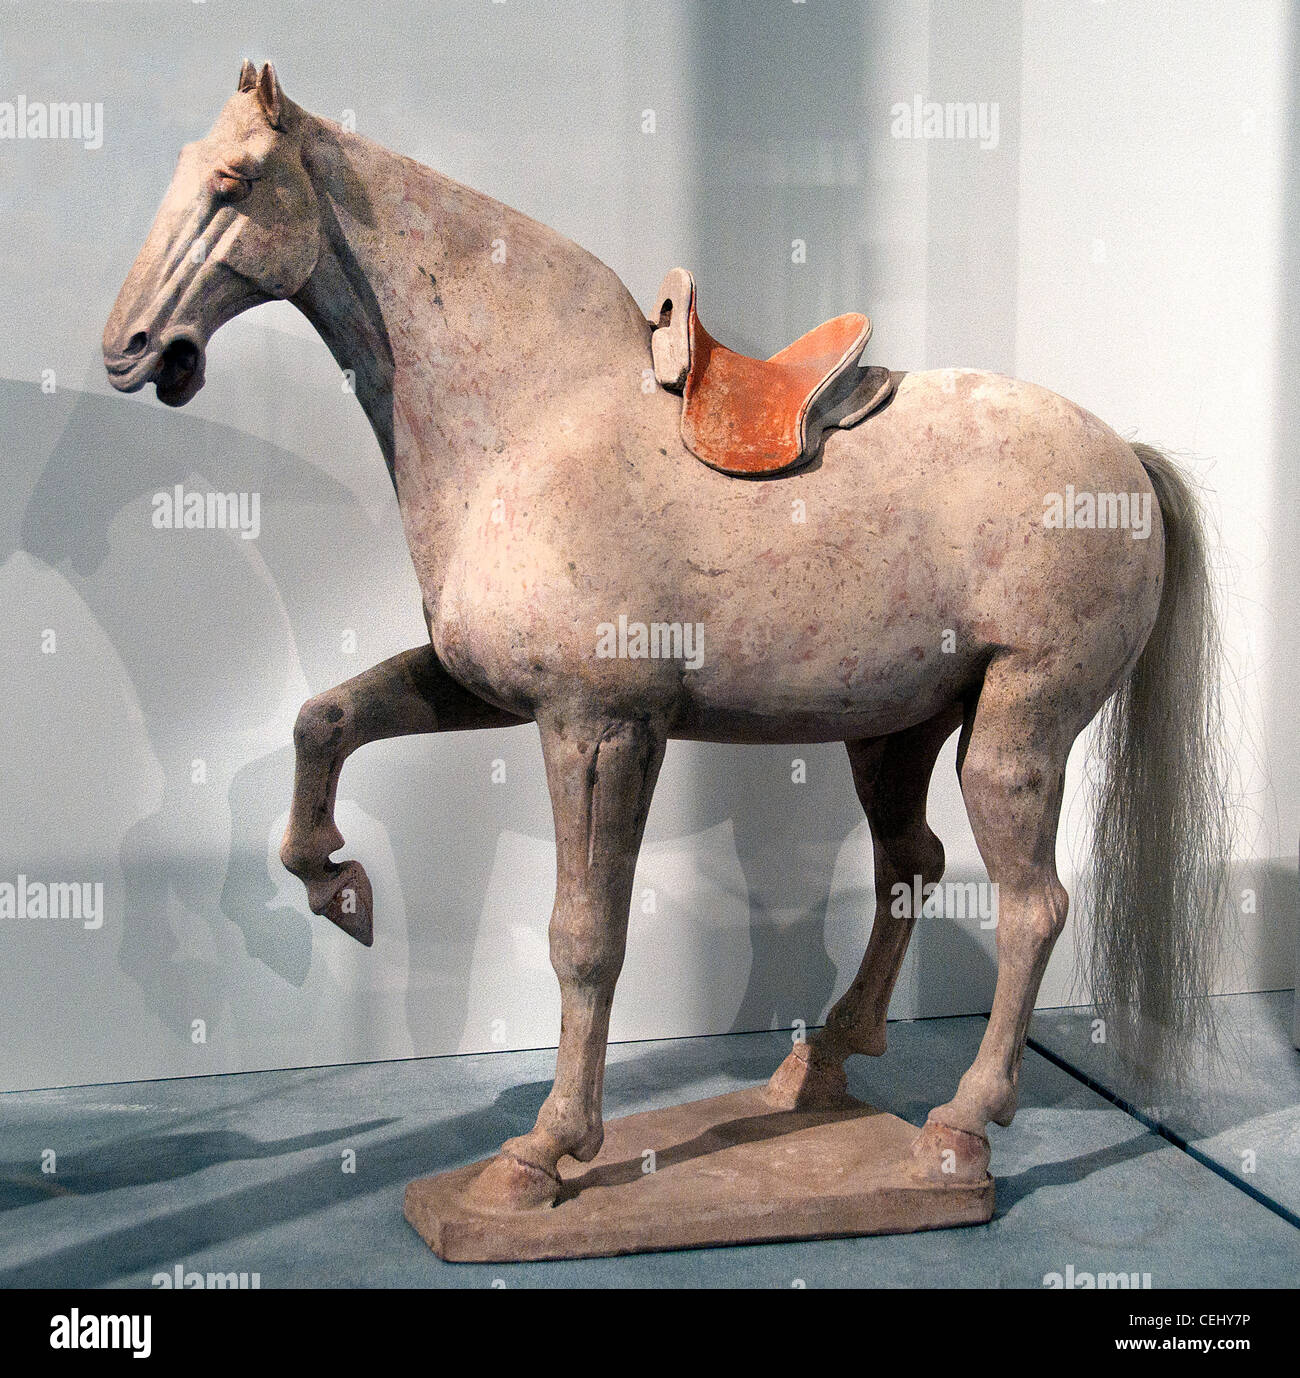 Selle de cheval blanc faïence blanche dynastie Tang poterie céramique 7 siècle chinois de Chine du nord Banque D'Images